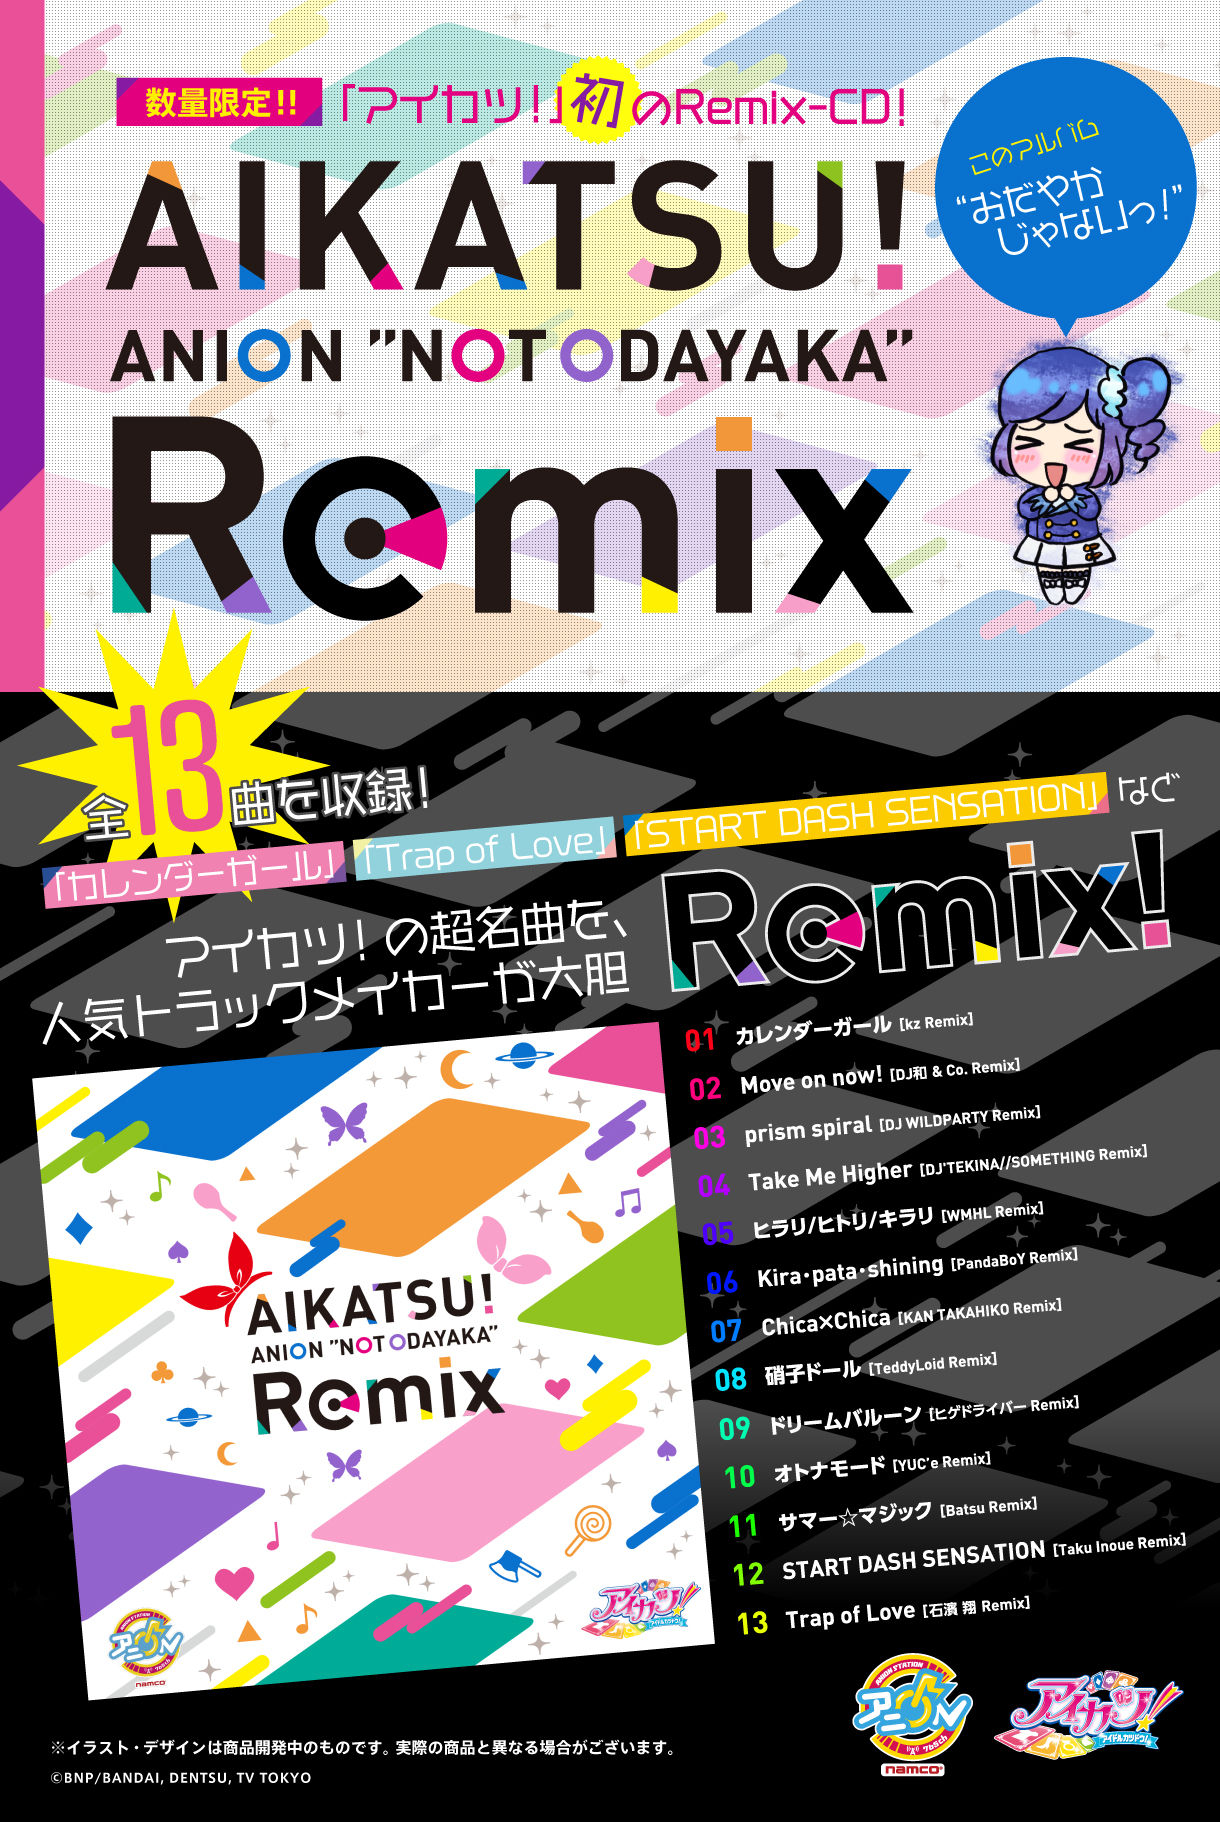 Aikatsu Anion Not Odayaka Remix アイカツ シリーズ 映像 書籍 プレミアムバンダイ公式通販